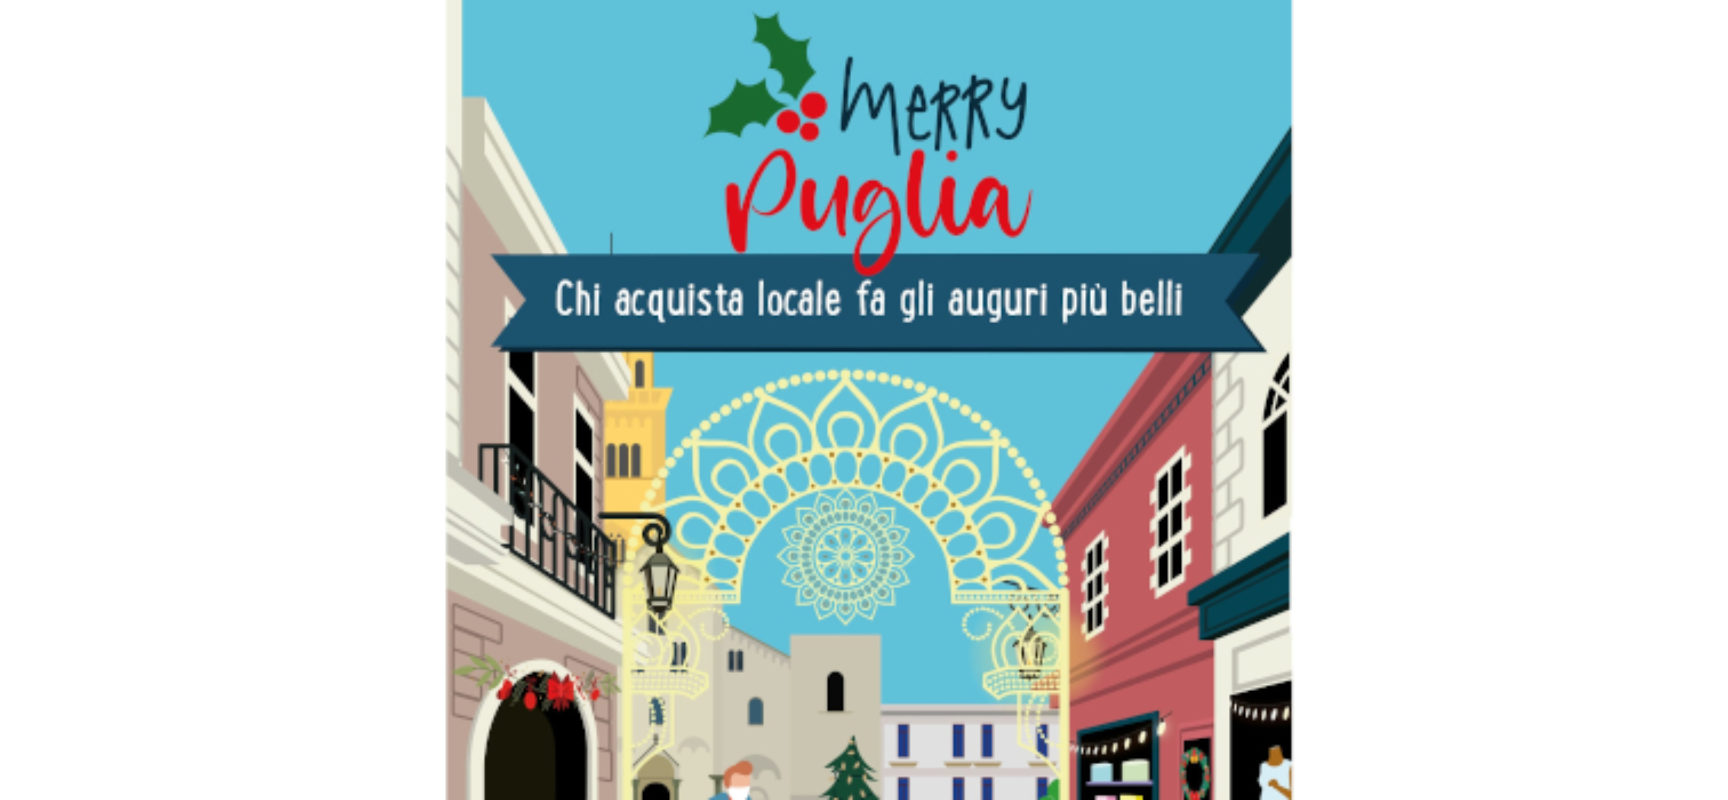 Merry Puglia, la campagna della Regione per incentivare acquisti “locali”